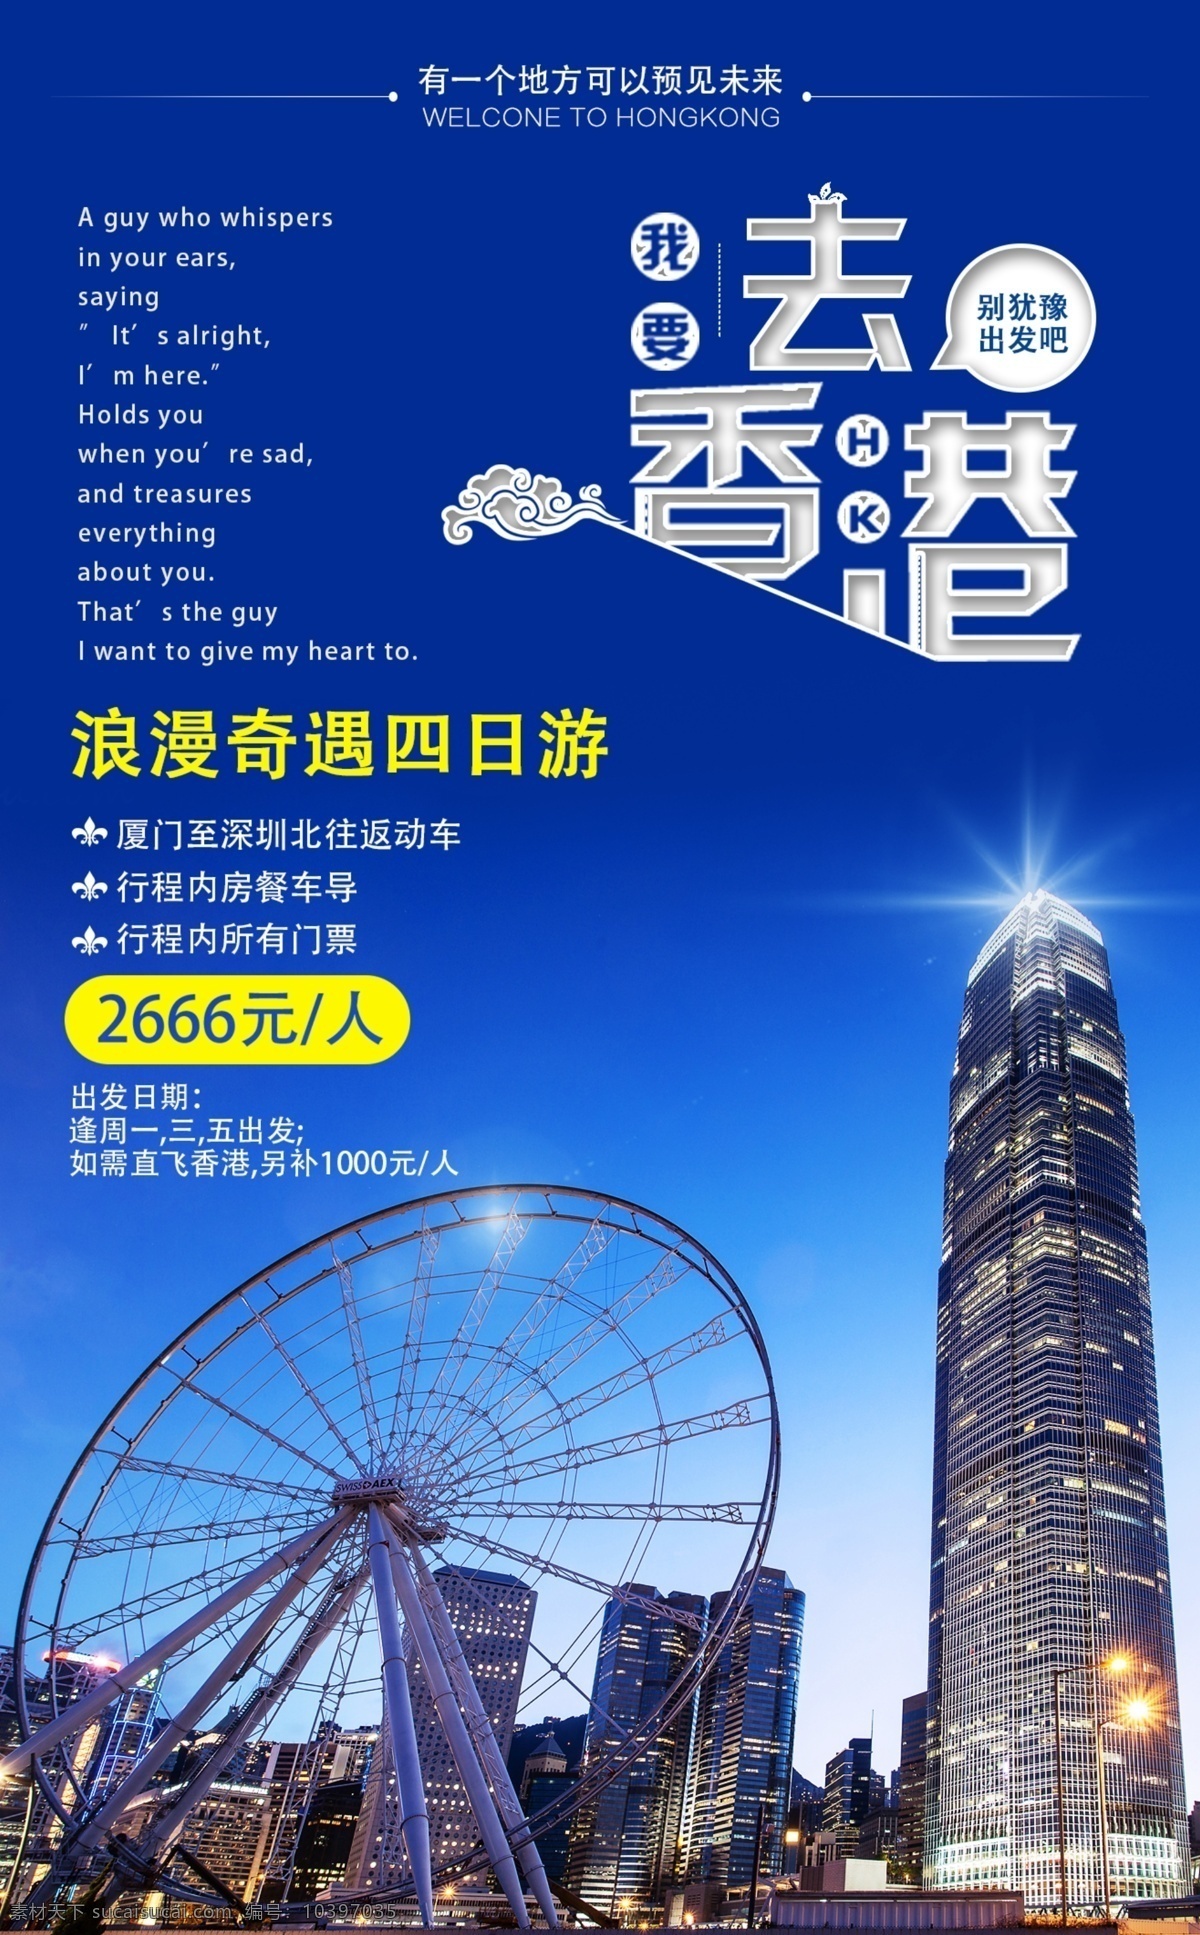 香港旅游海报 香港 旅游 摩天轮 建筑 蓝色 海报 广告